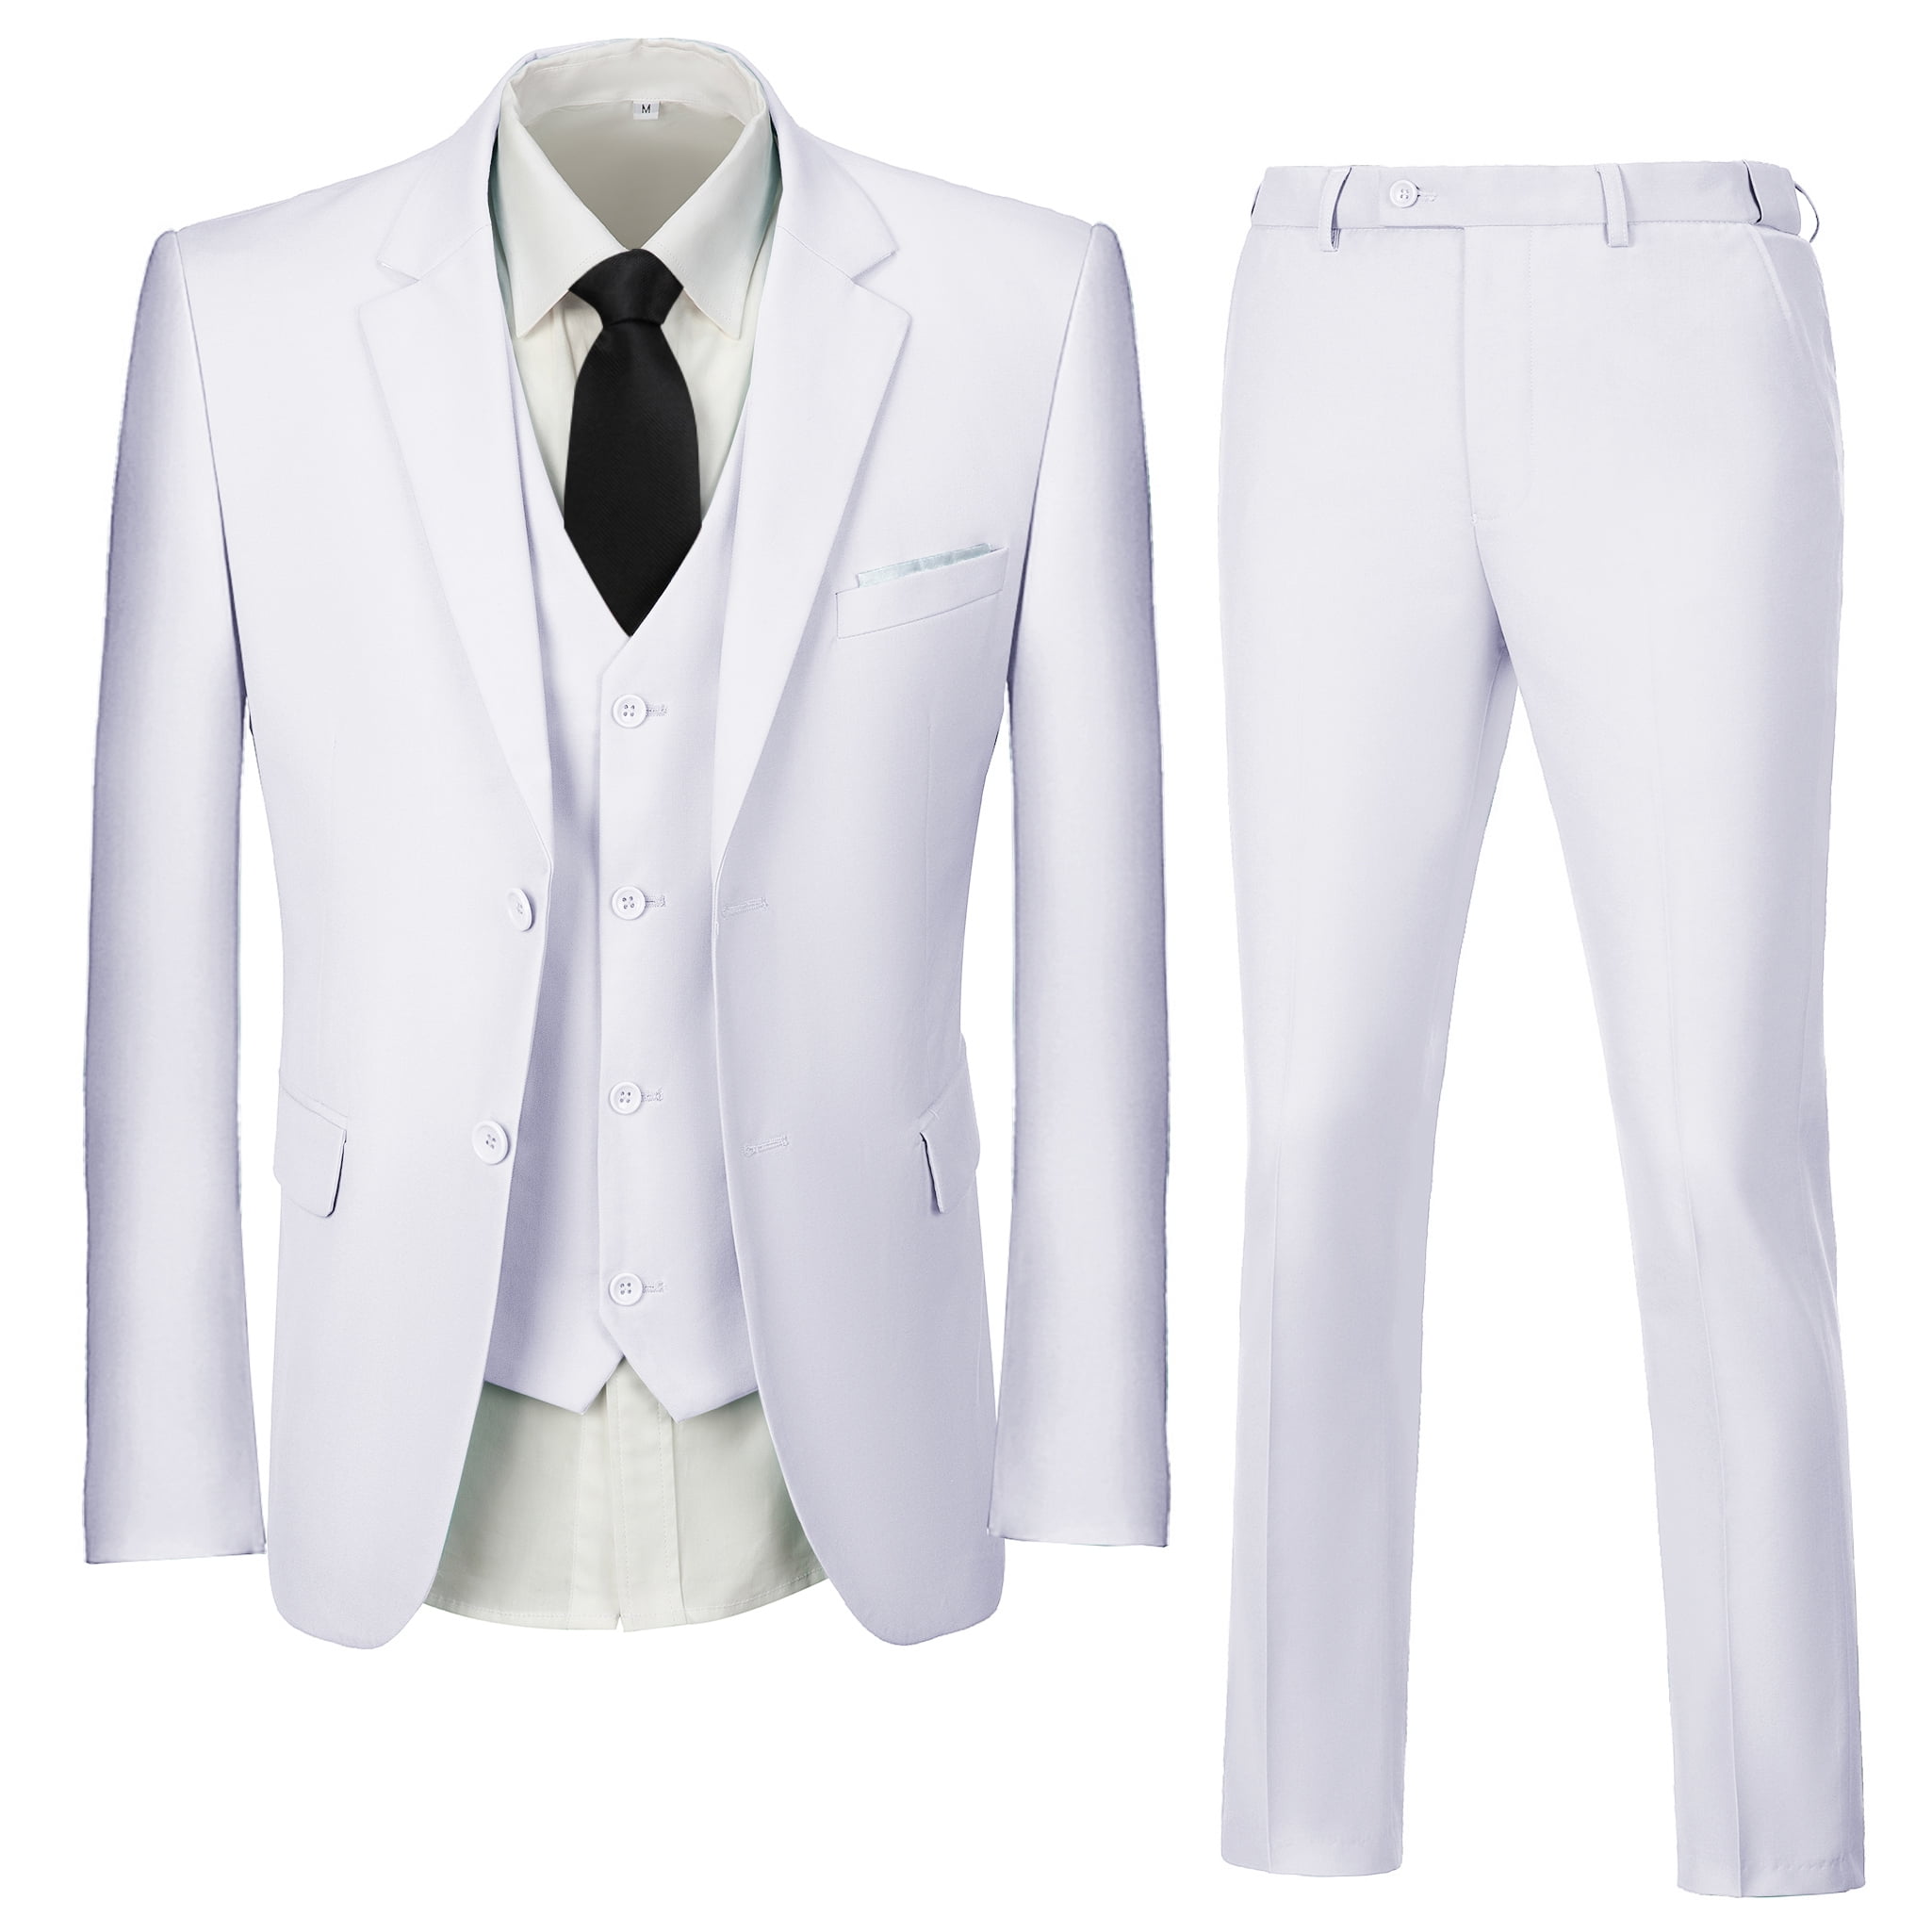 Wehilion Men's Suit Slim Fit 3-Piece Suit Casual Blazer Business ...